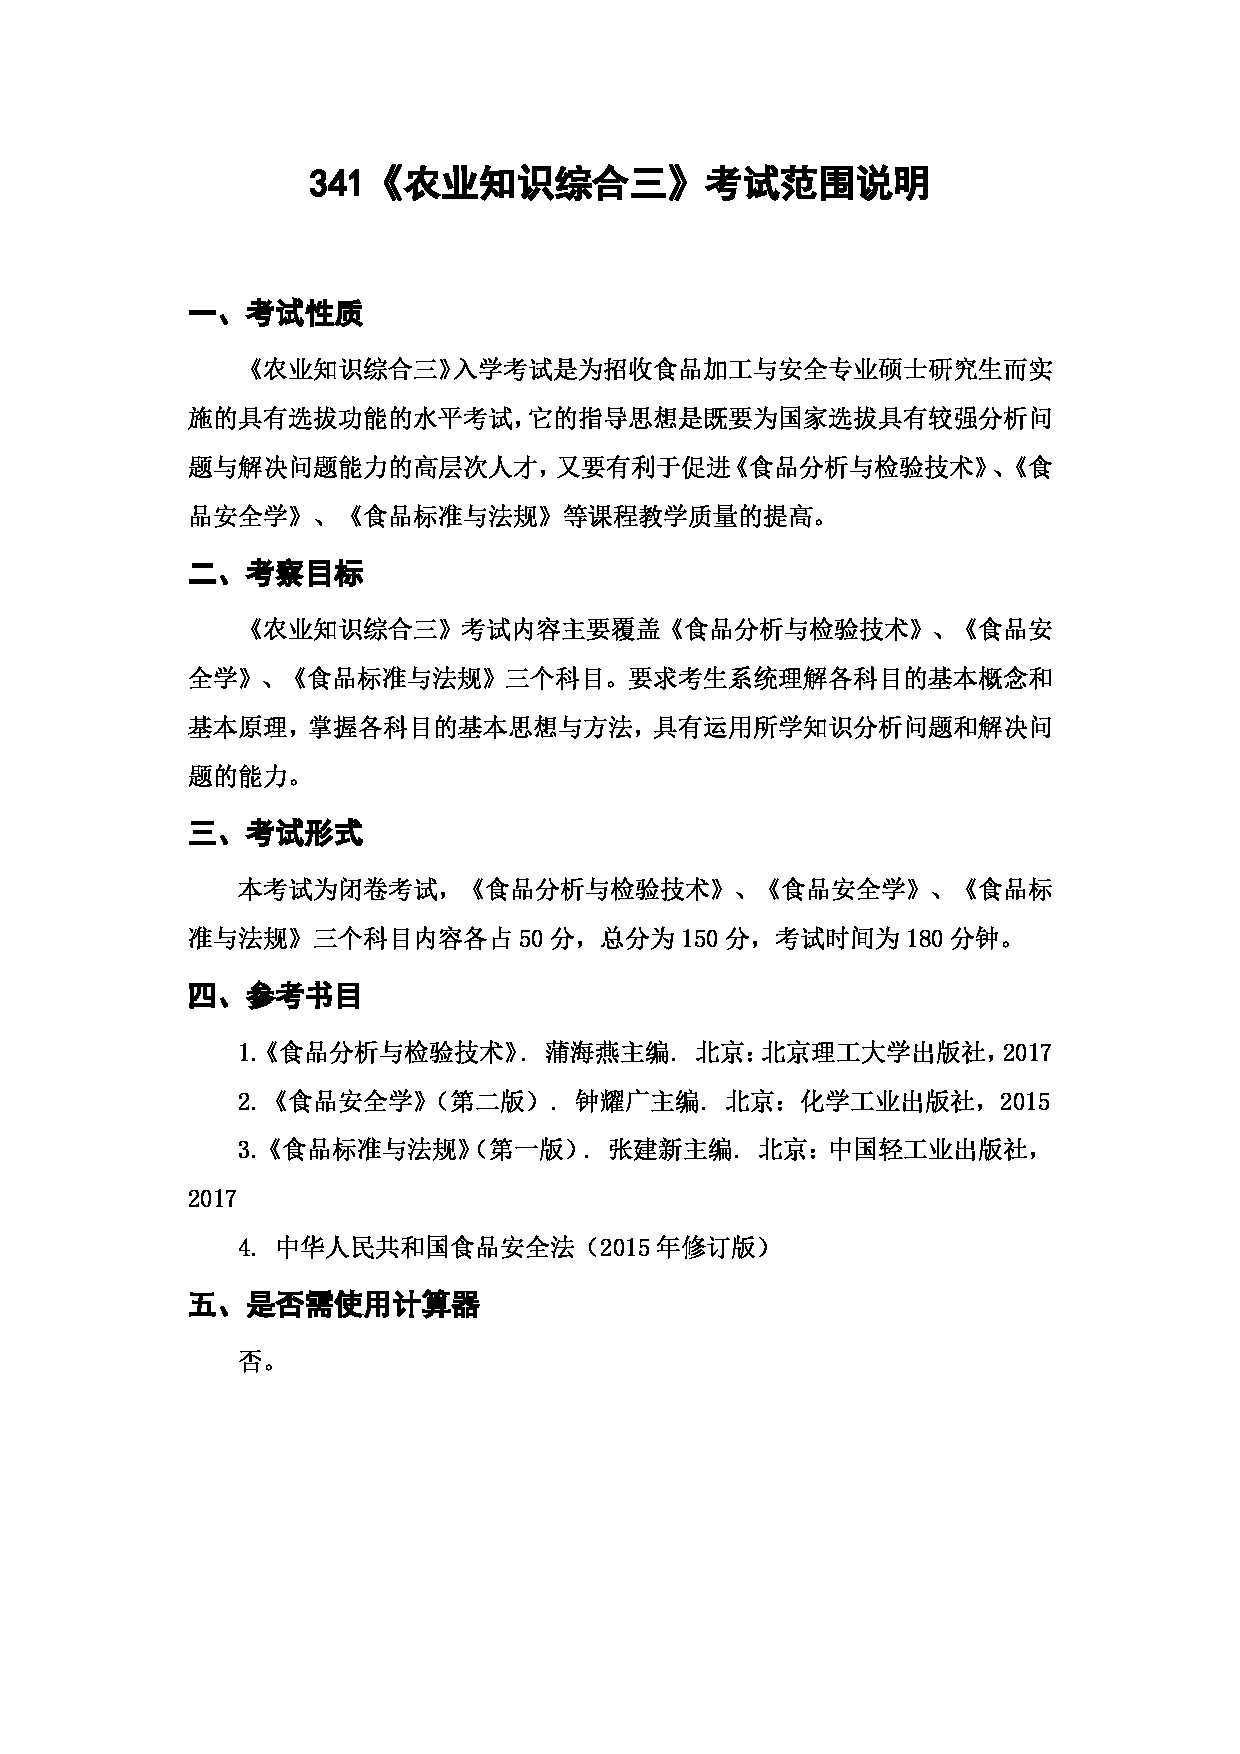 上海海洋大学2023年考研自命题科目 341《农业知识综合三》 考试范围第1页